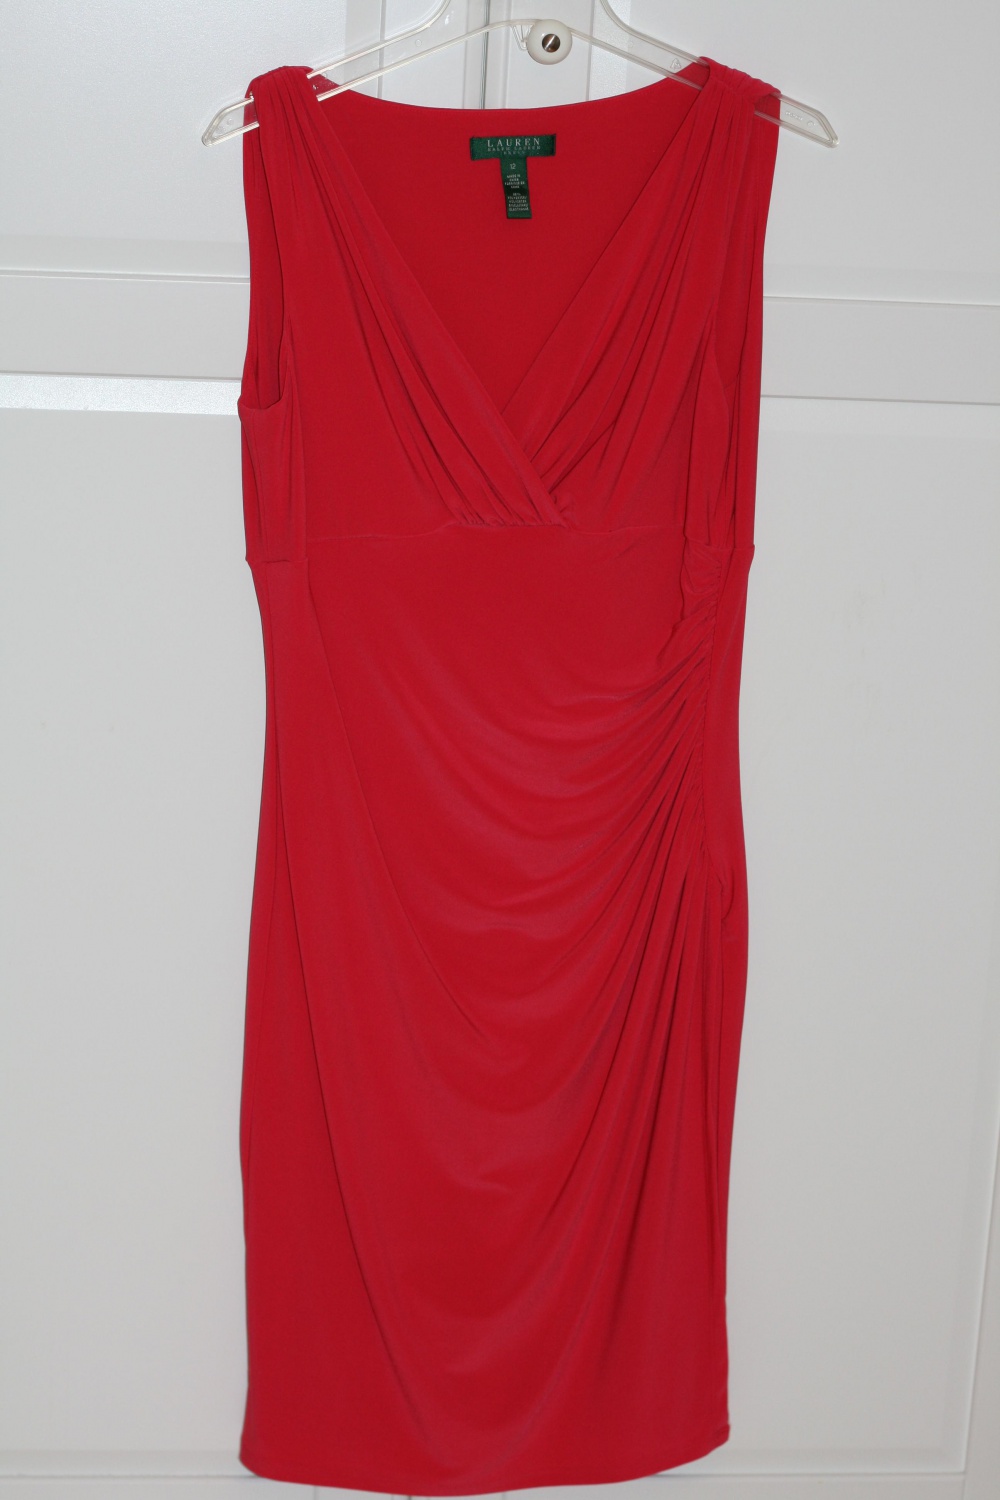 Платье Ralph Lauren (Ральф Лорен) б.у. 1 раз, в идеальном сост.